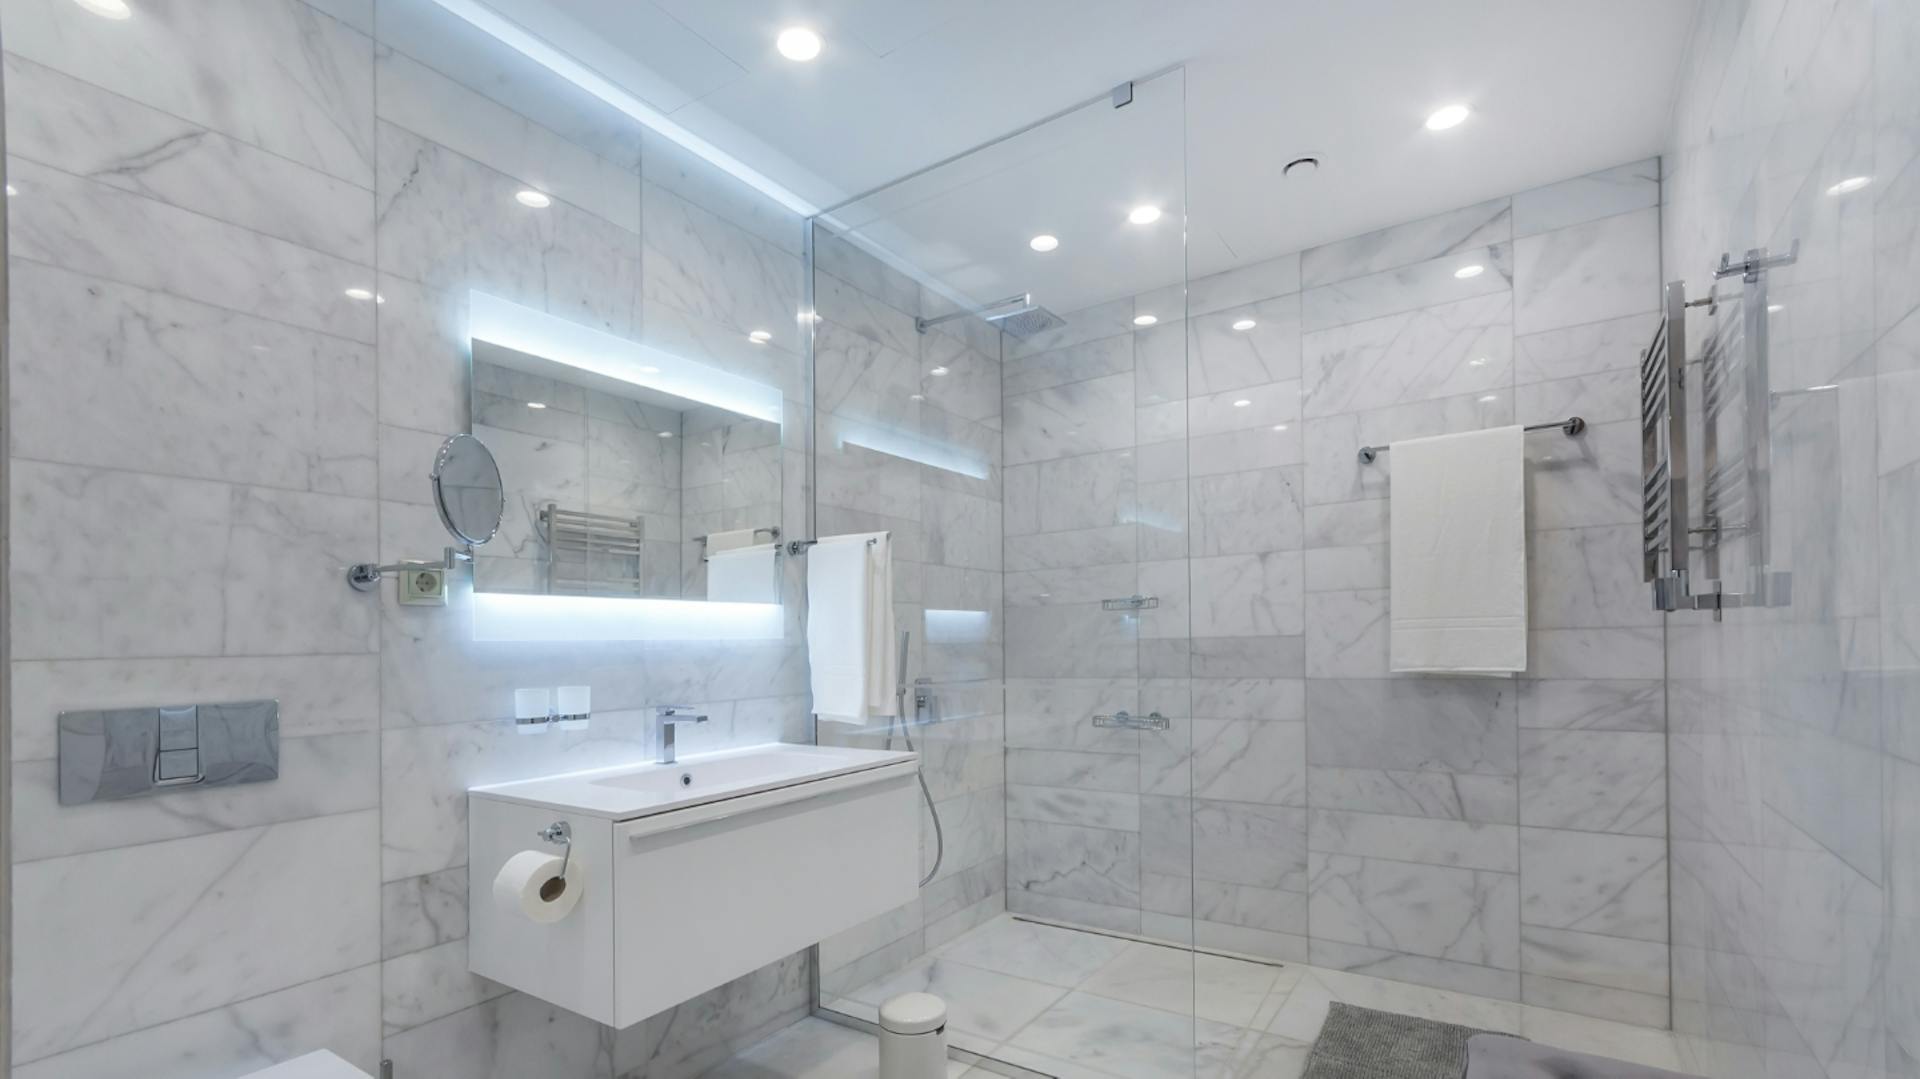 Badezimmer Deckenbeleuchtung: Inspiration & Tipps